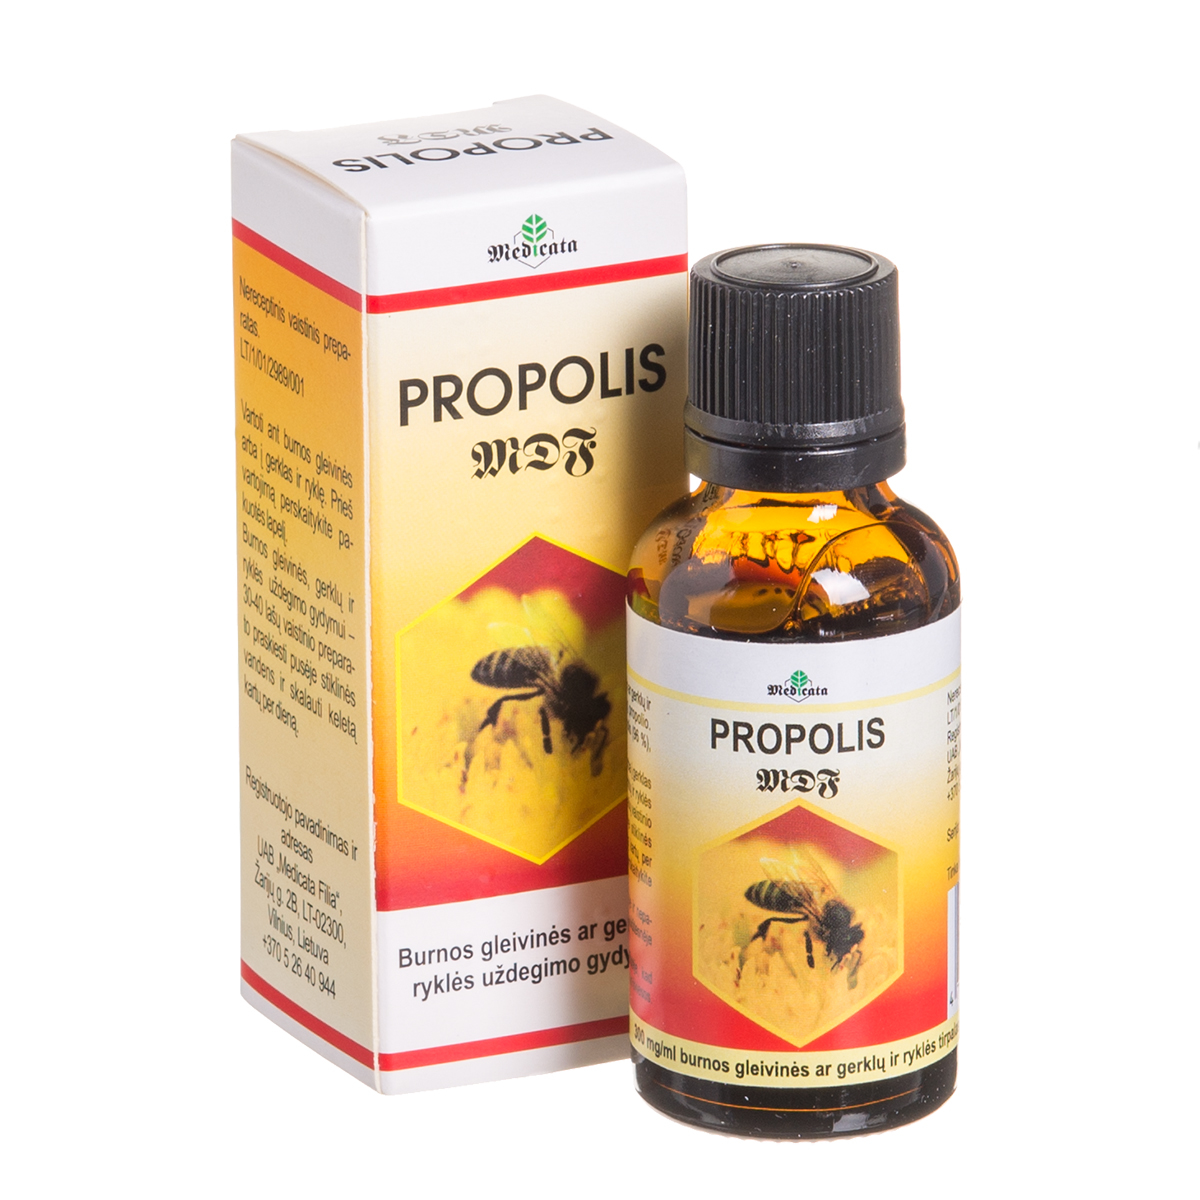 PROPOLIS MDF, 300 mg/ml, burnos gleivinės ar gerklų ir ryklės tirpalas, 30 ml